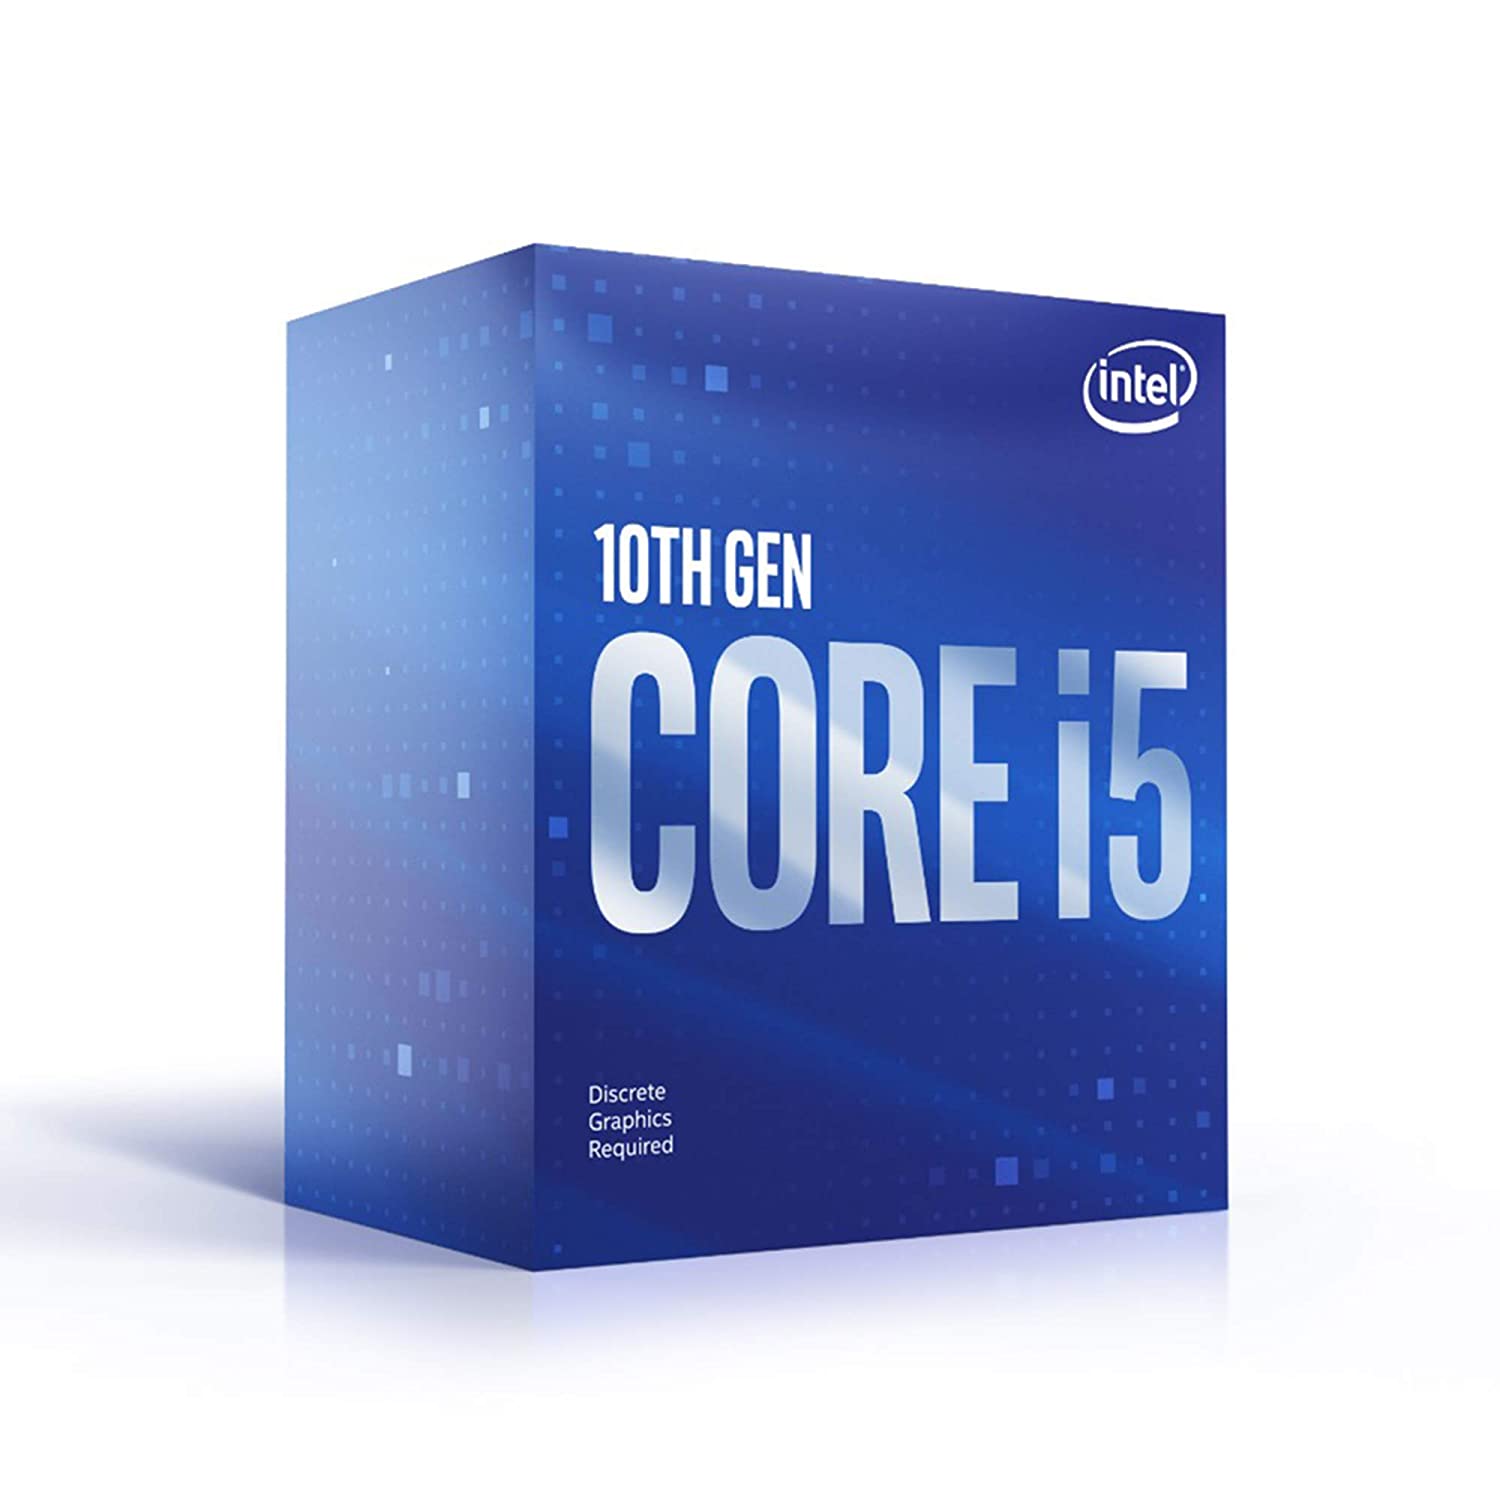 Intel (R) Core(TM) i5-10400F 10th Gen Desktop Processor 6 CORES/ 12